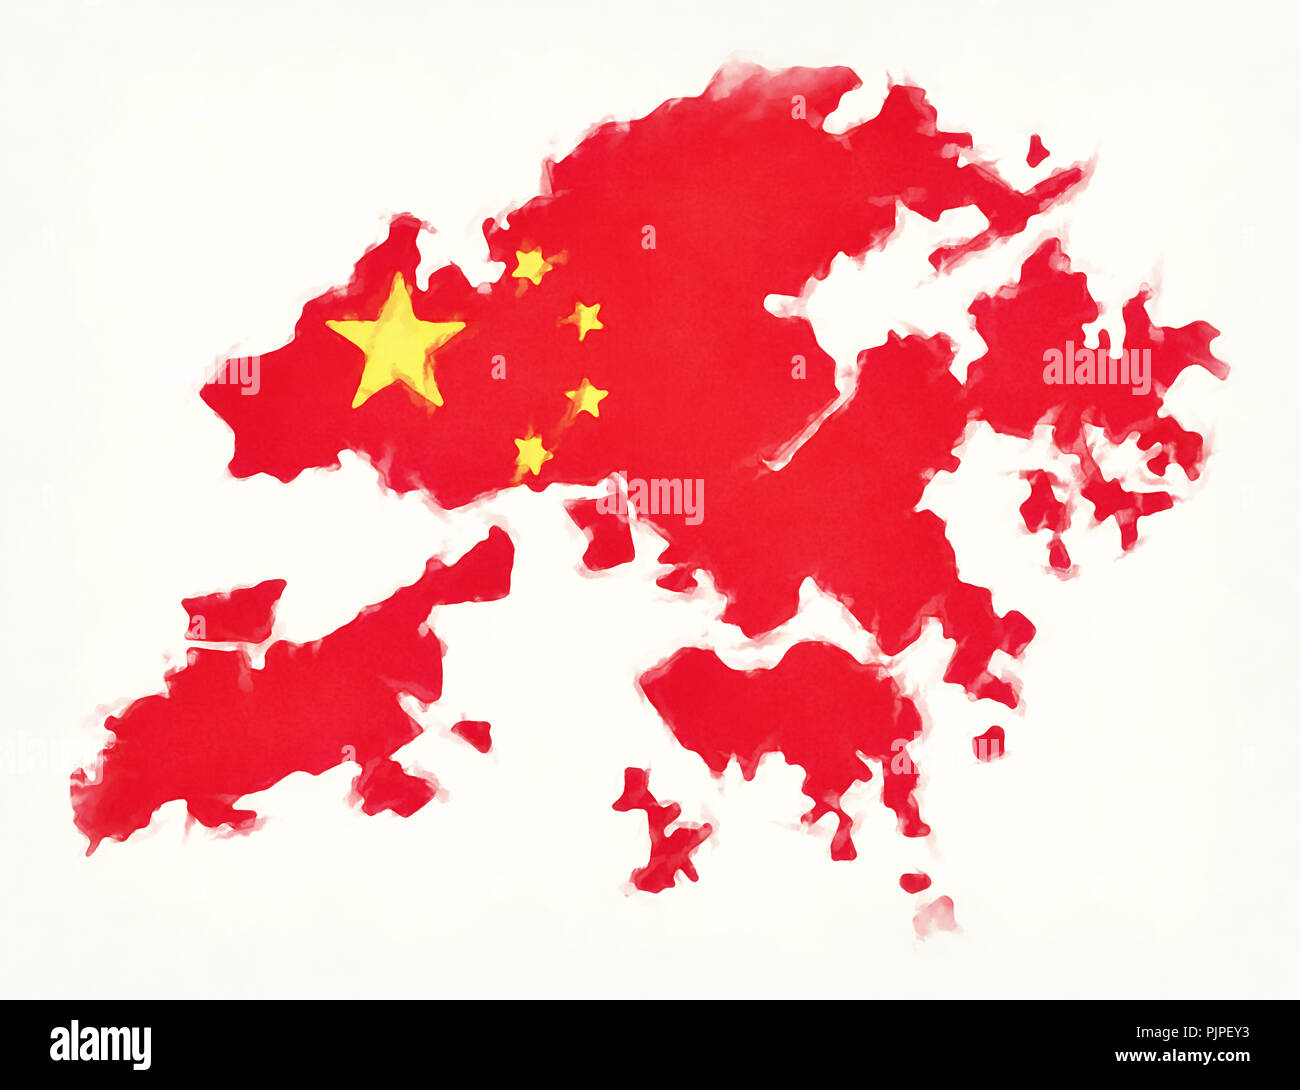 Hong Kong China watercolor map with Chinese national flag illustration Stock Photo